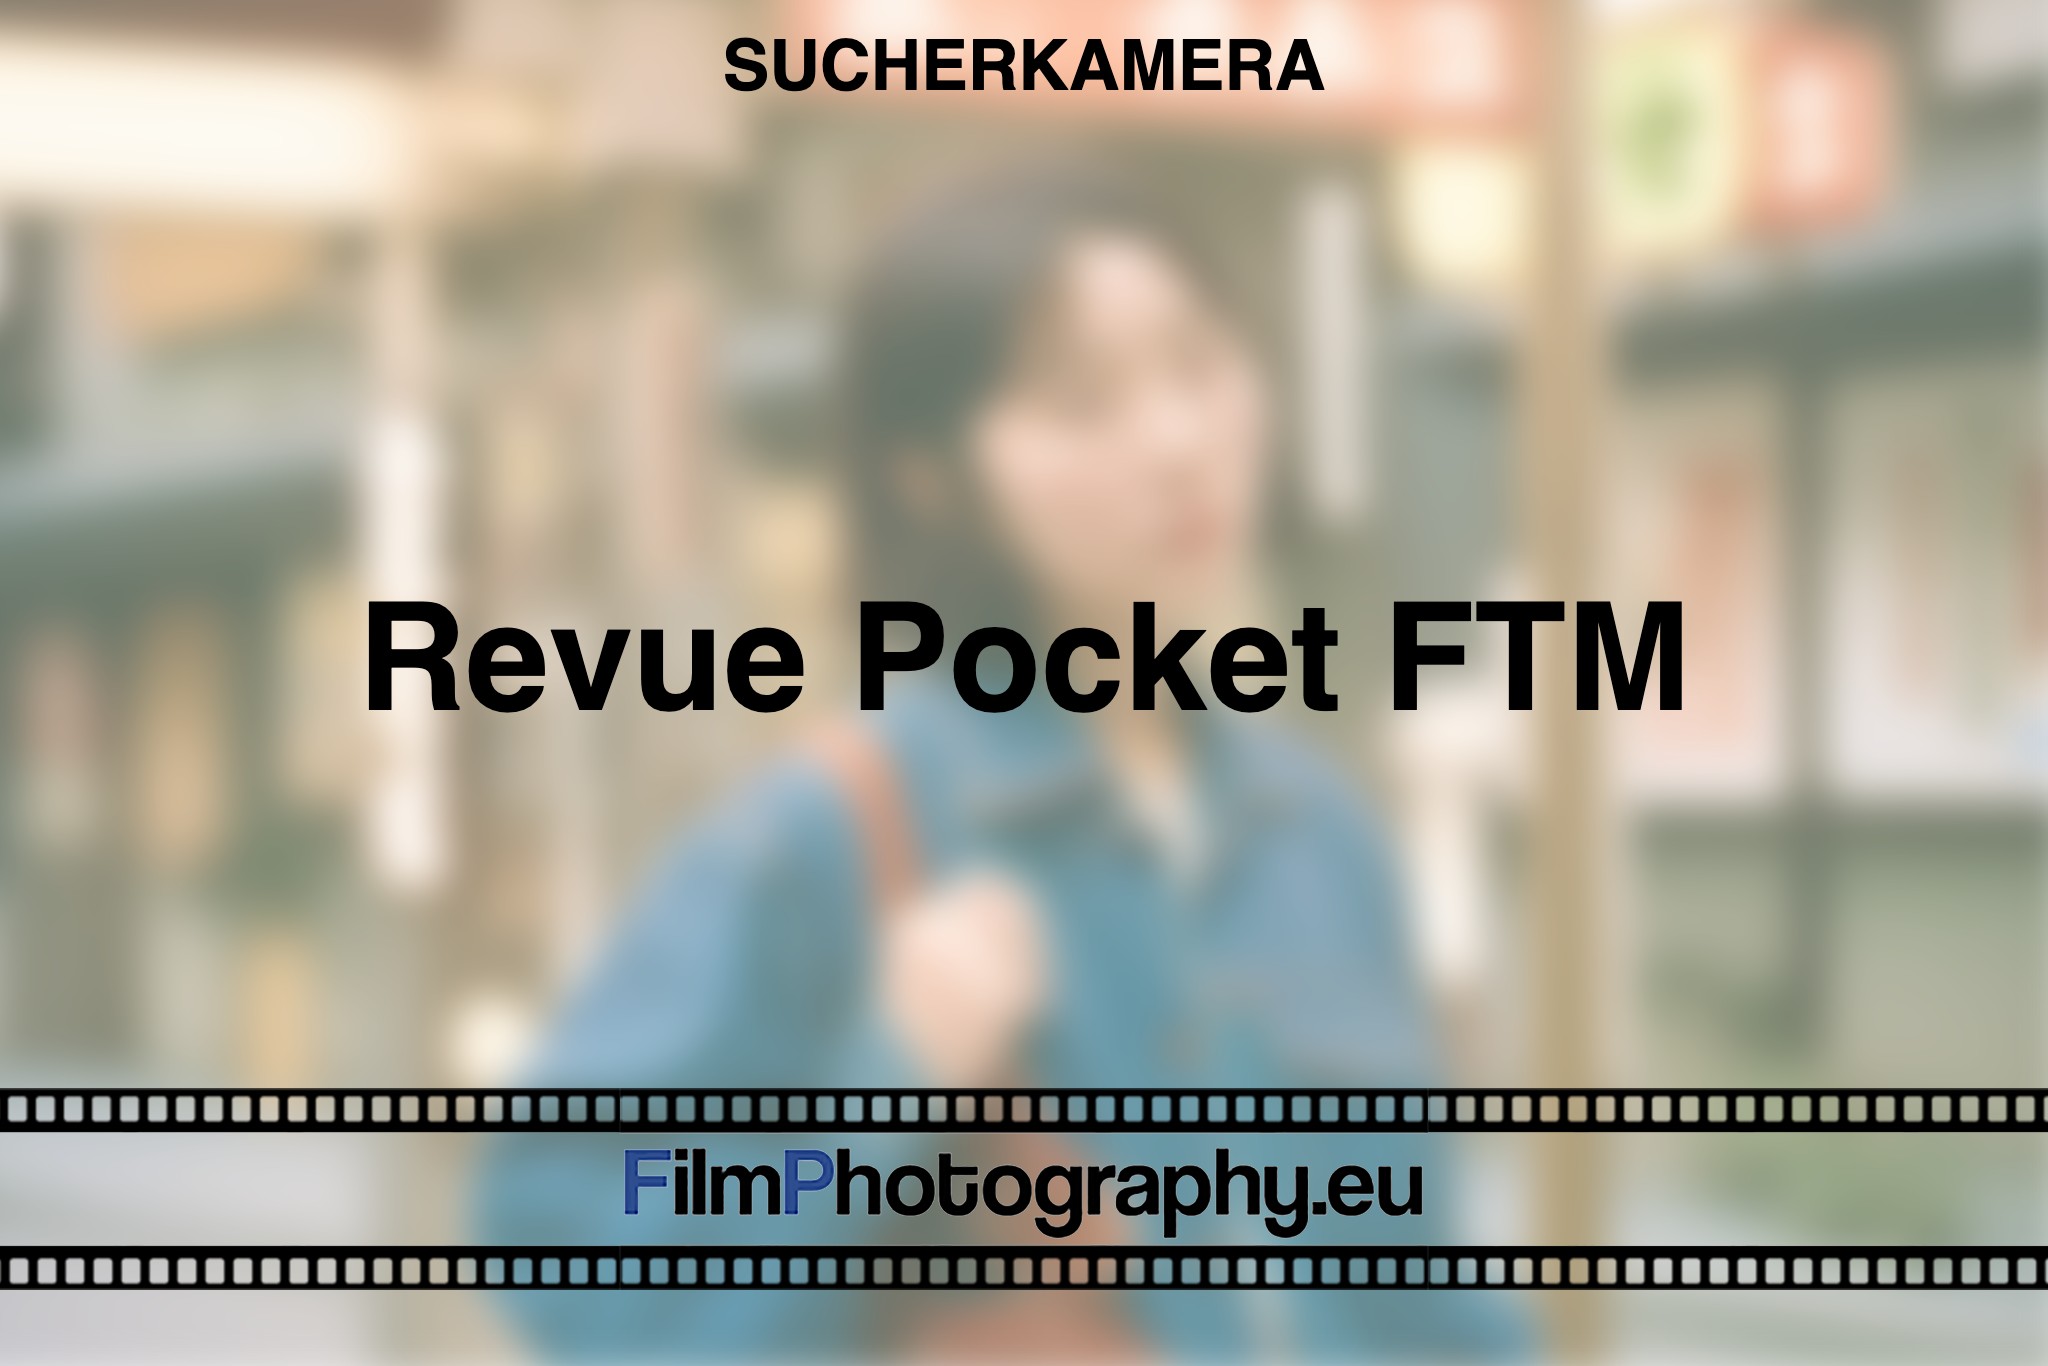 revue-pocket-ftm-sucherkamera-bnv